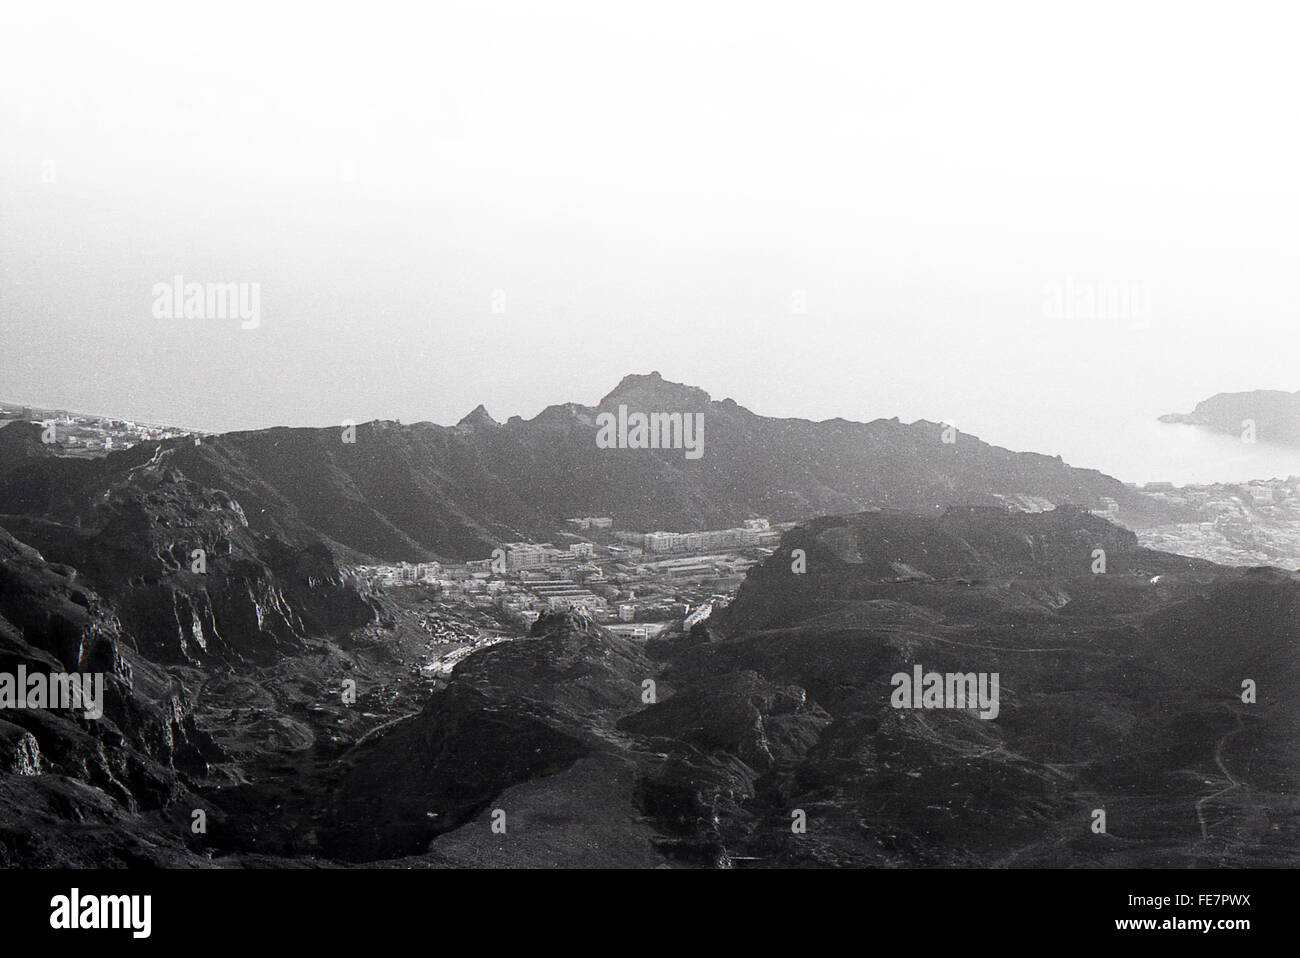 42 Cdo RM mountain country around Aden Yemen 1967 British withdrawal Stock Photo